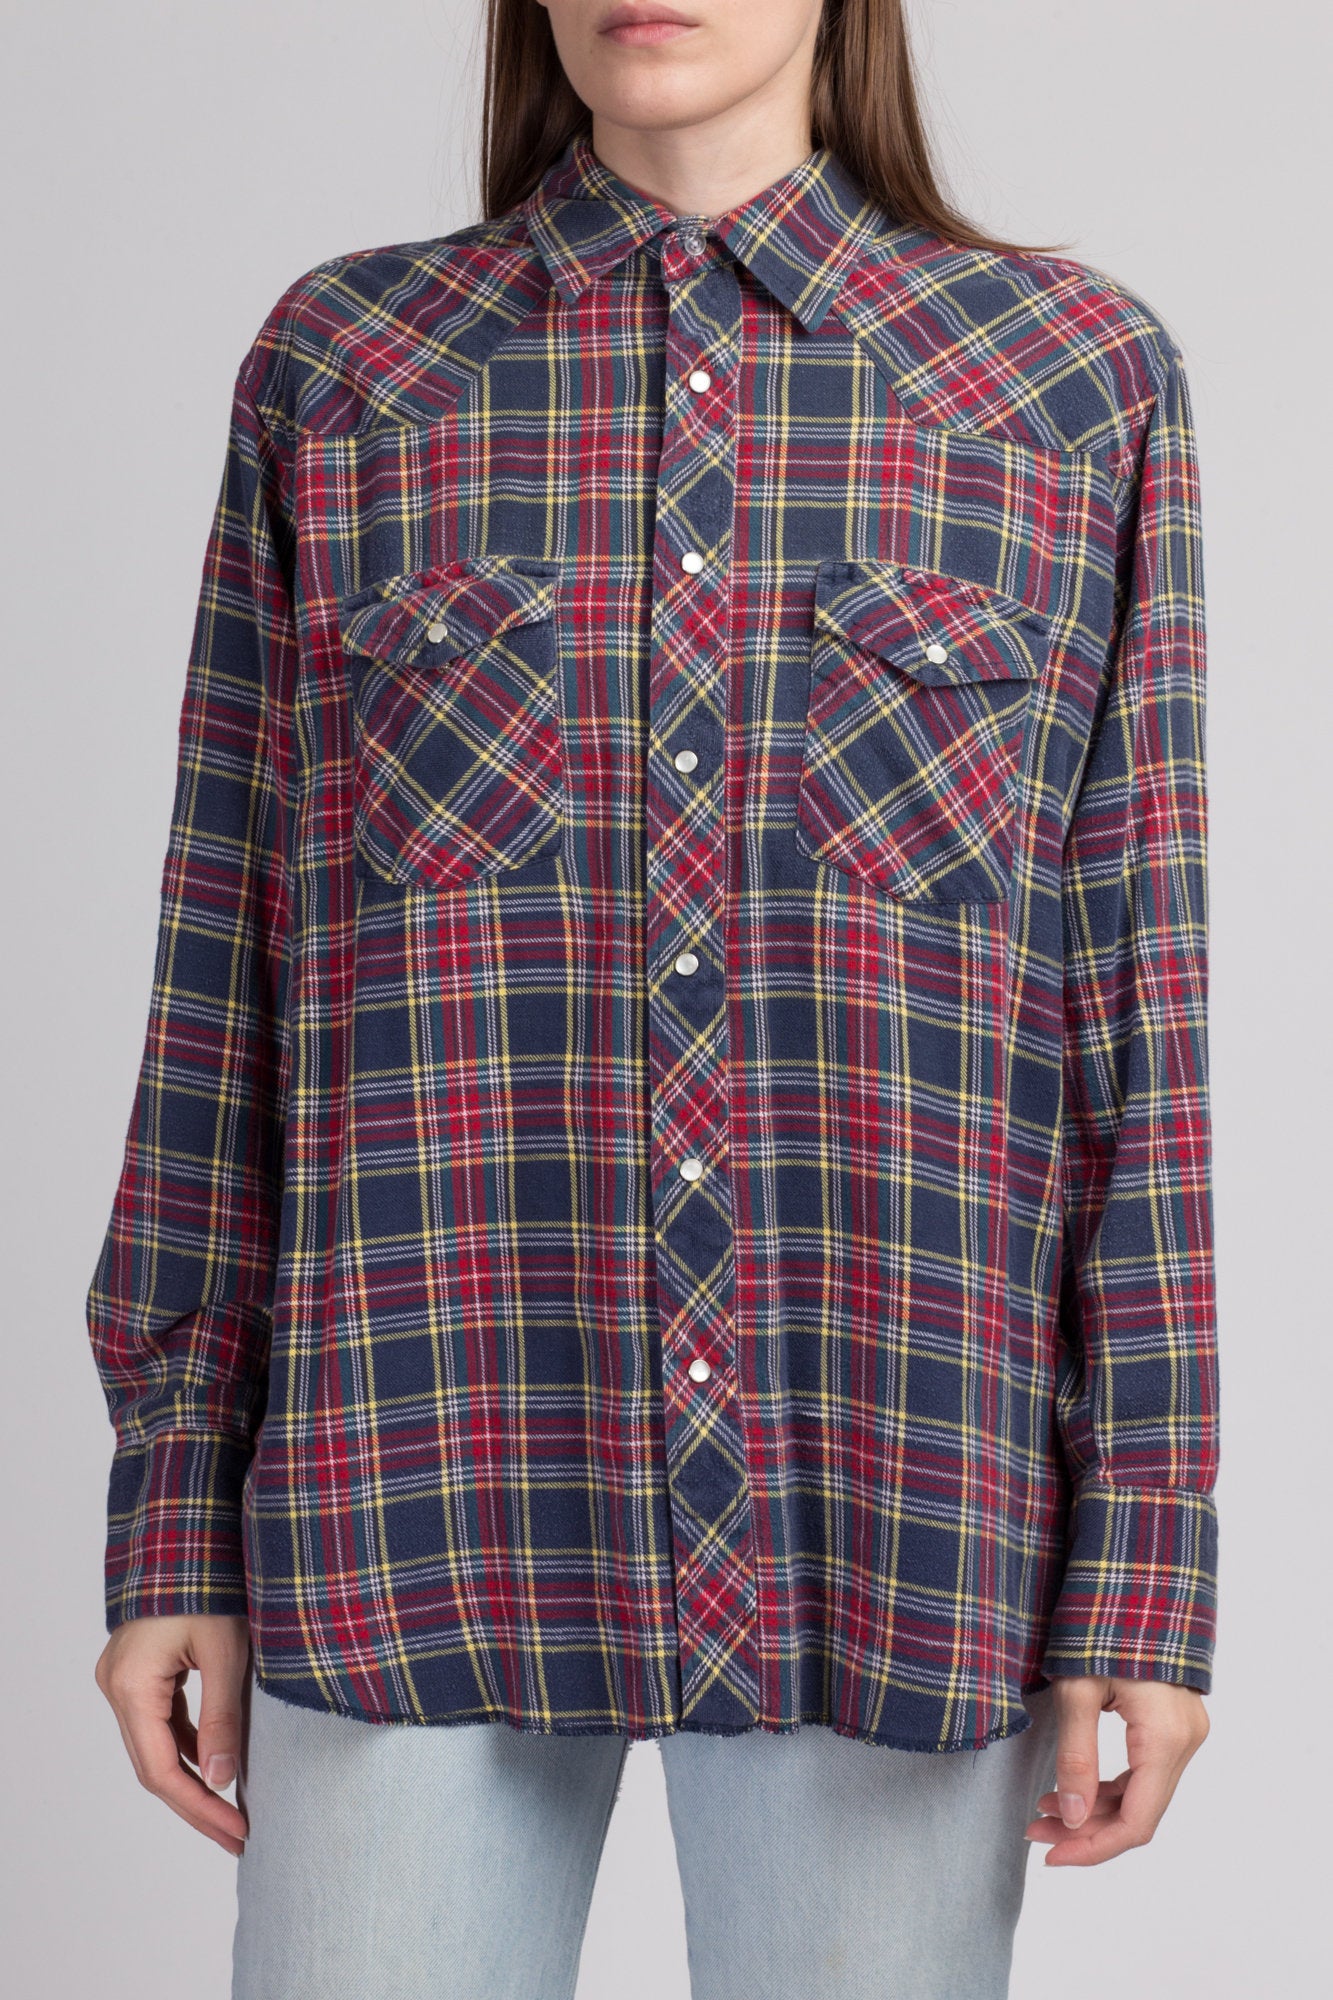 80s Plaid Cotton Flannel Shirt - Men's Large